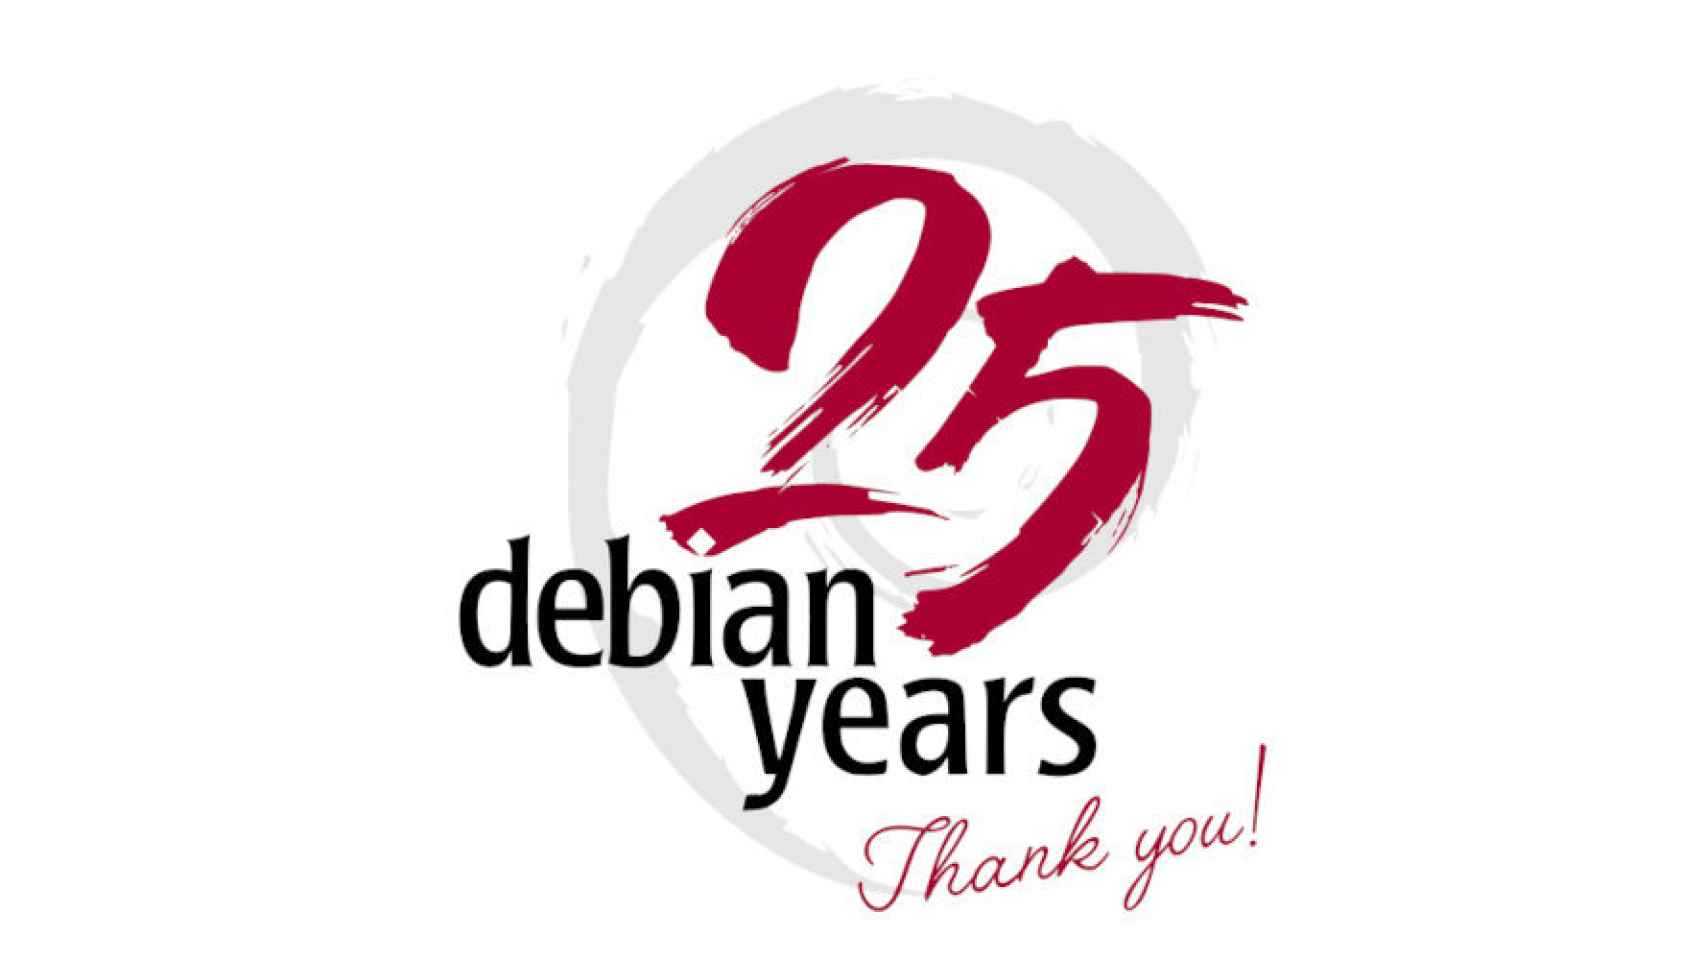 Https debian org. Debian. Debian logo без фона. Debian logo icon.